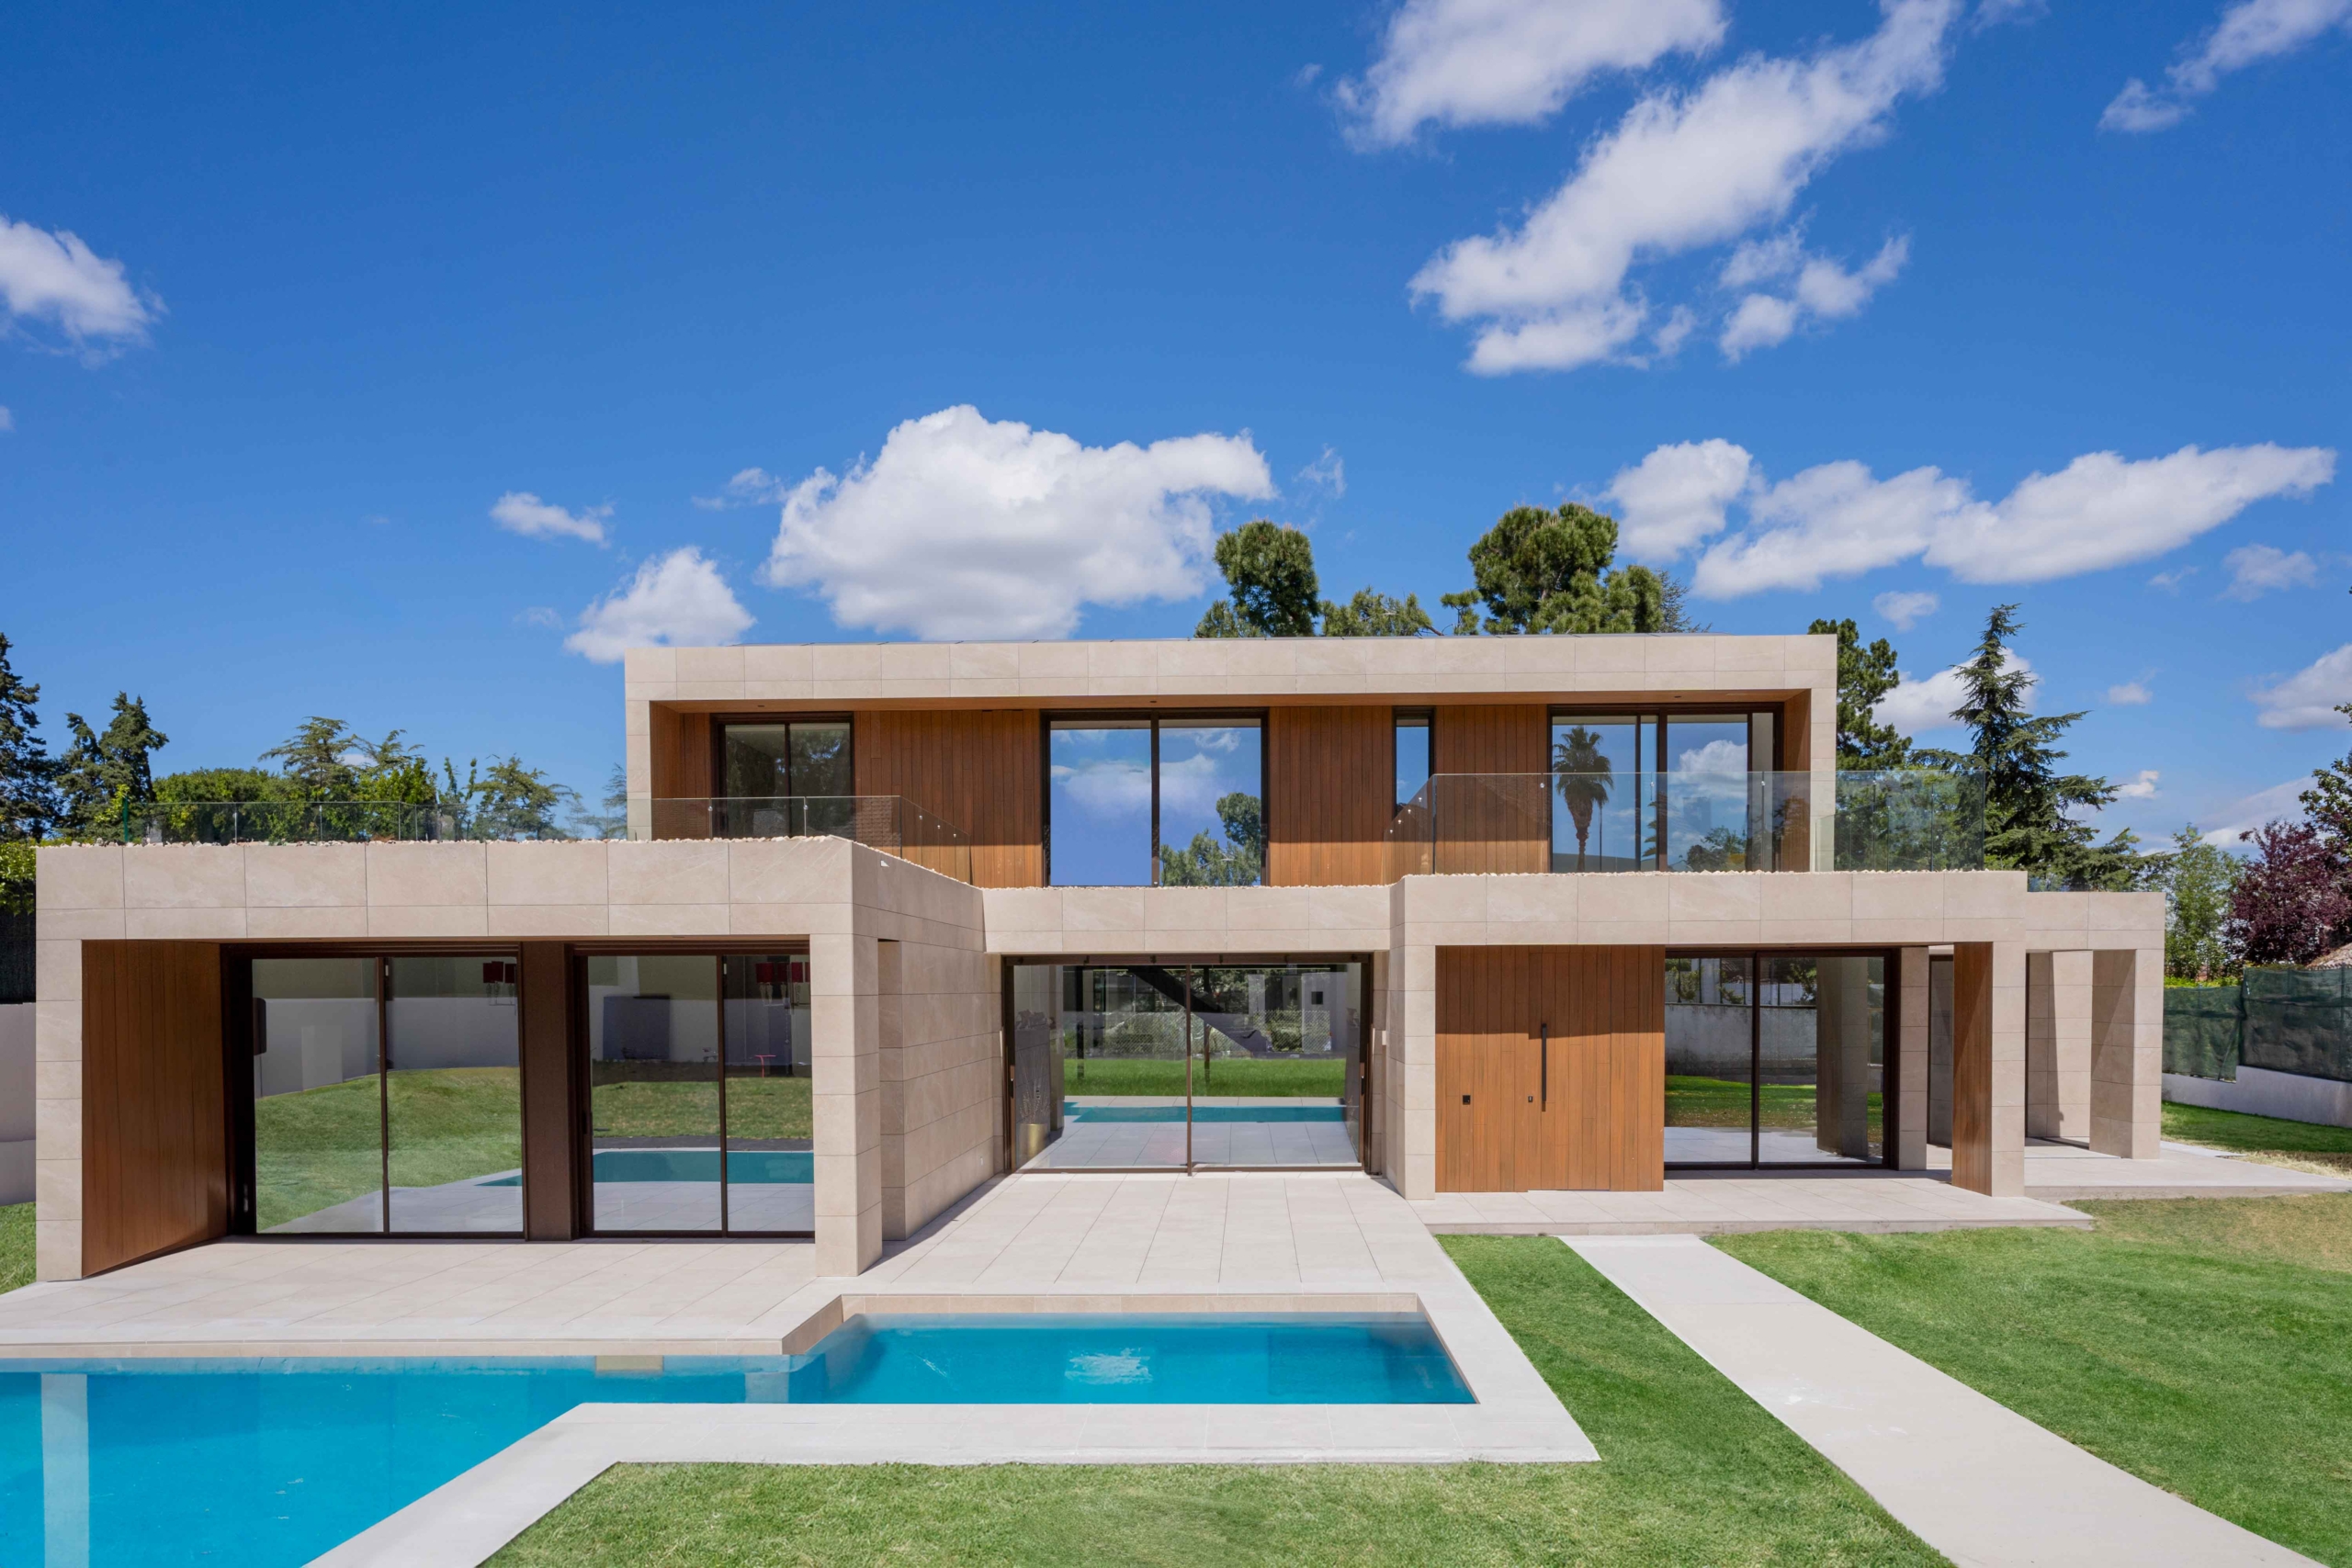 Fachada revestimiento porcelánico y madera tecnológica vista frontal casa modular moderna